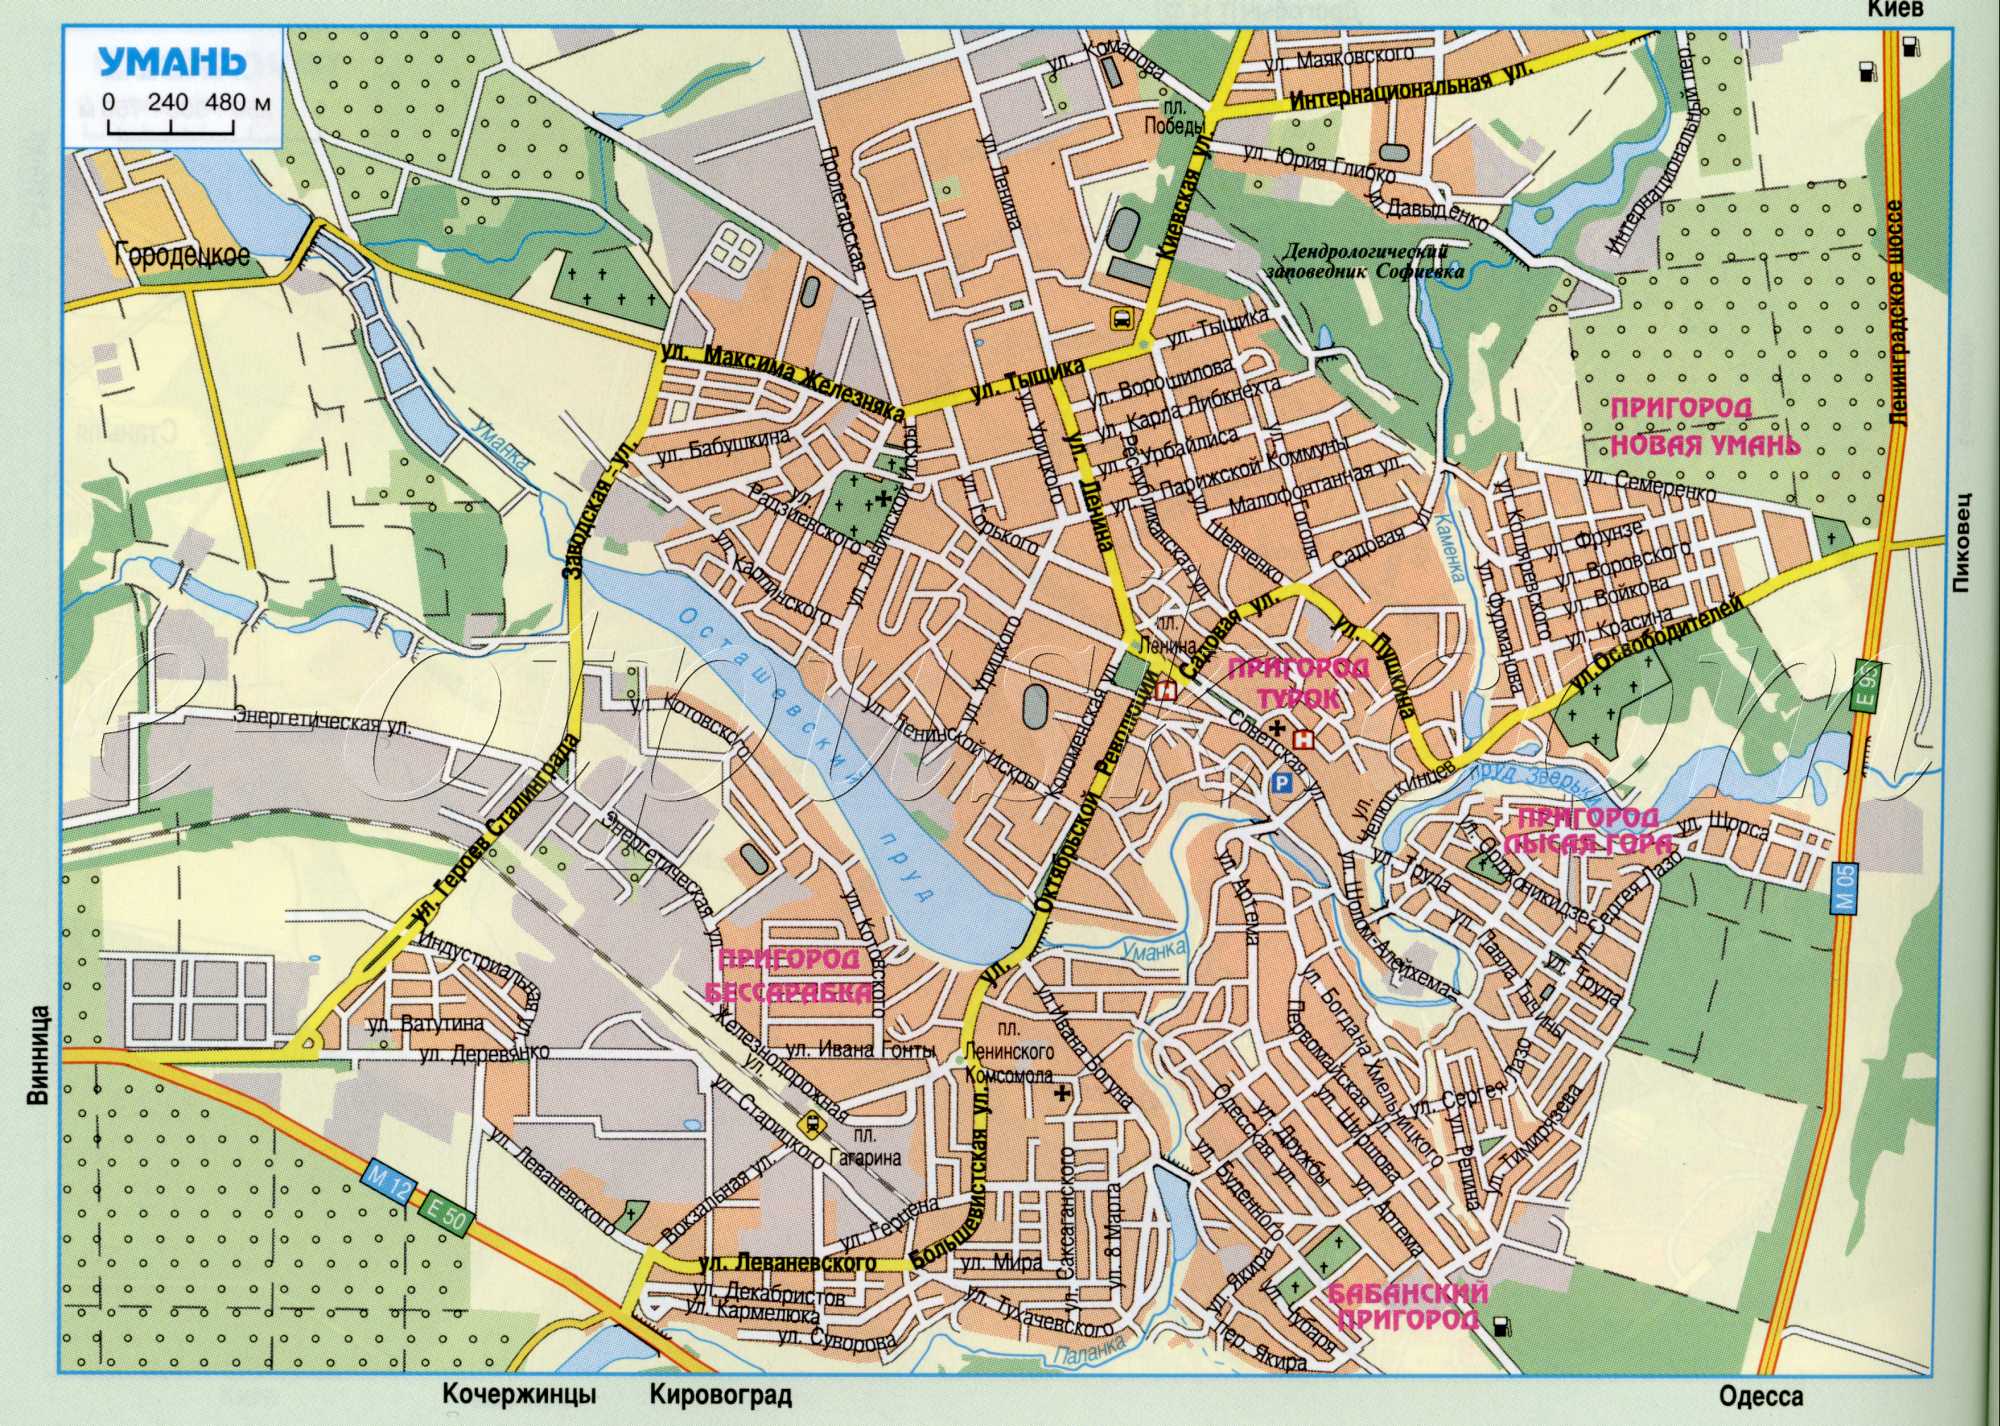 Uman Karte. Auto Stadtplan Uman, Ukraine. detaillierte Karte der Straßen